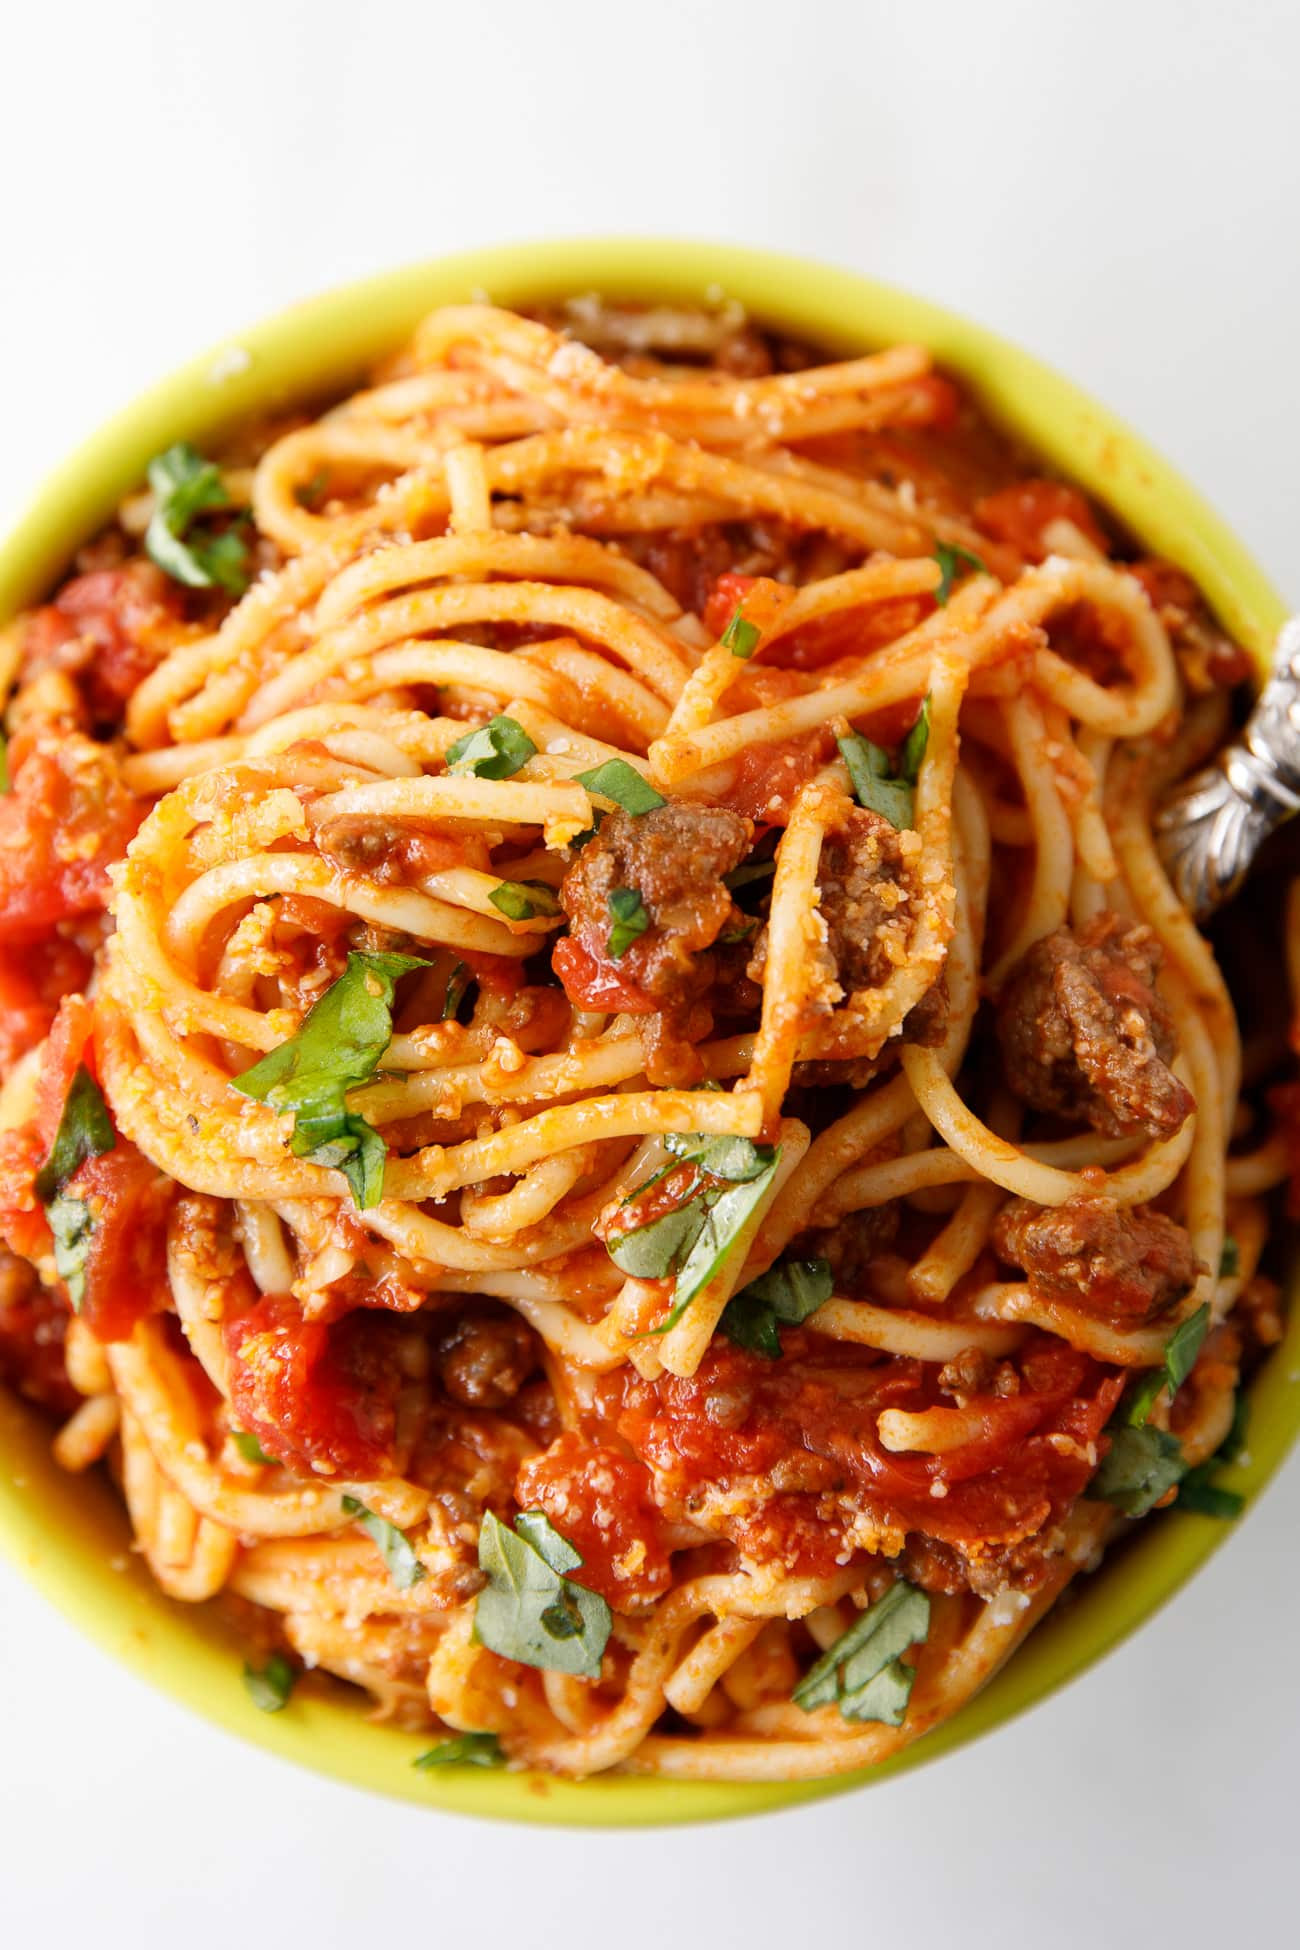 Instant Pot Spaghetti
 Instant Pot Spaghetti BEST Instant Pot Spaghetti Recipe